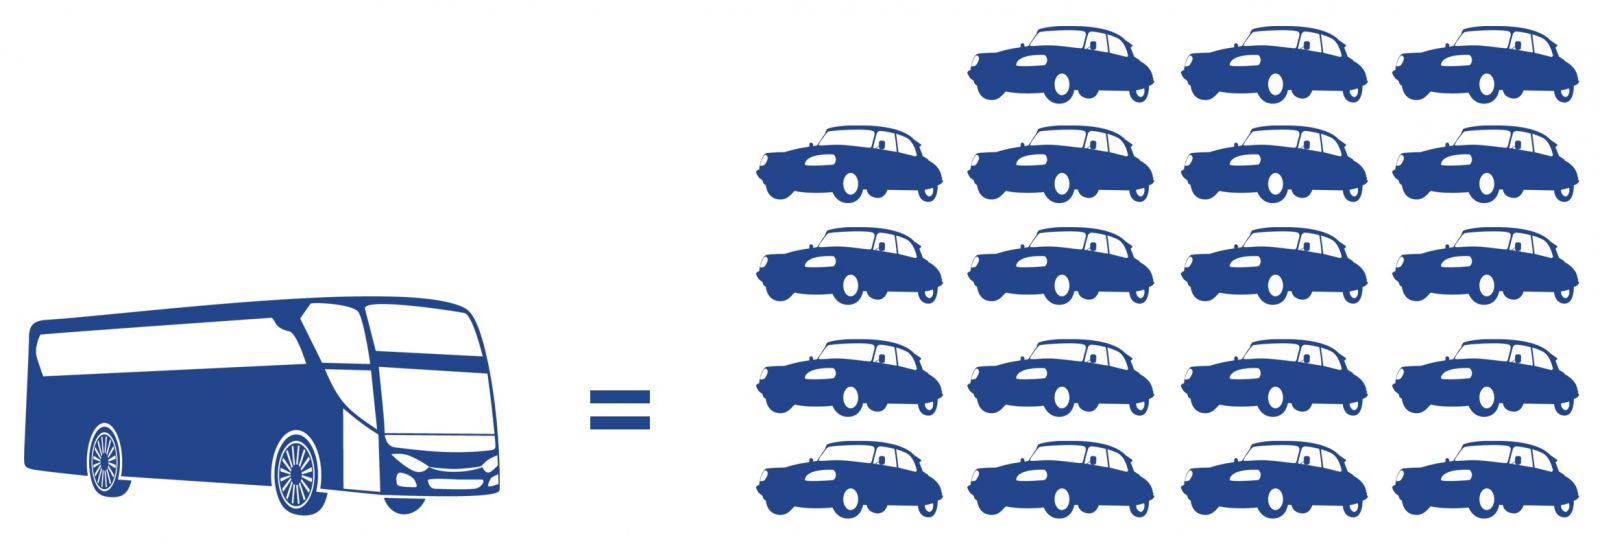 bus equals cars diagram